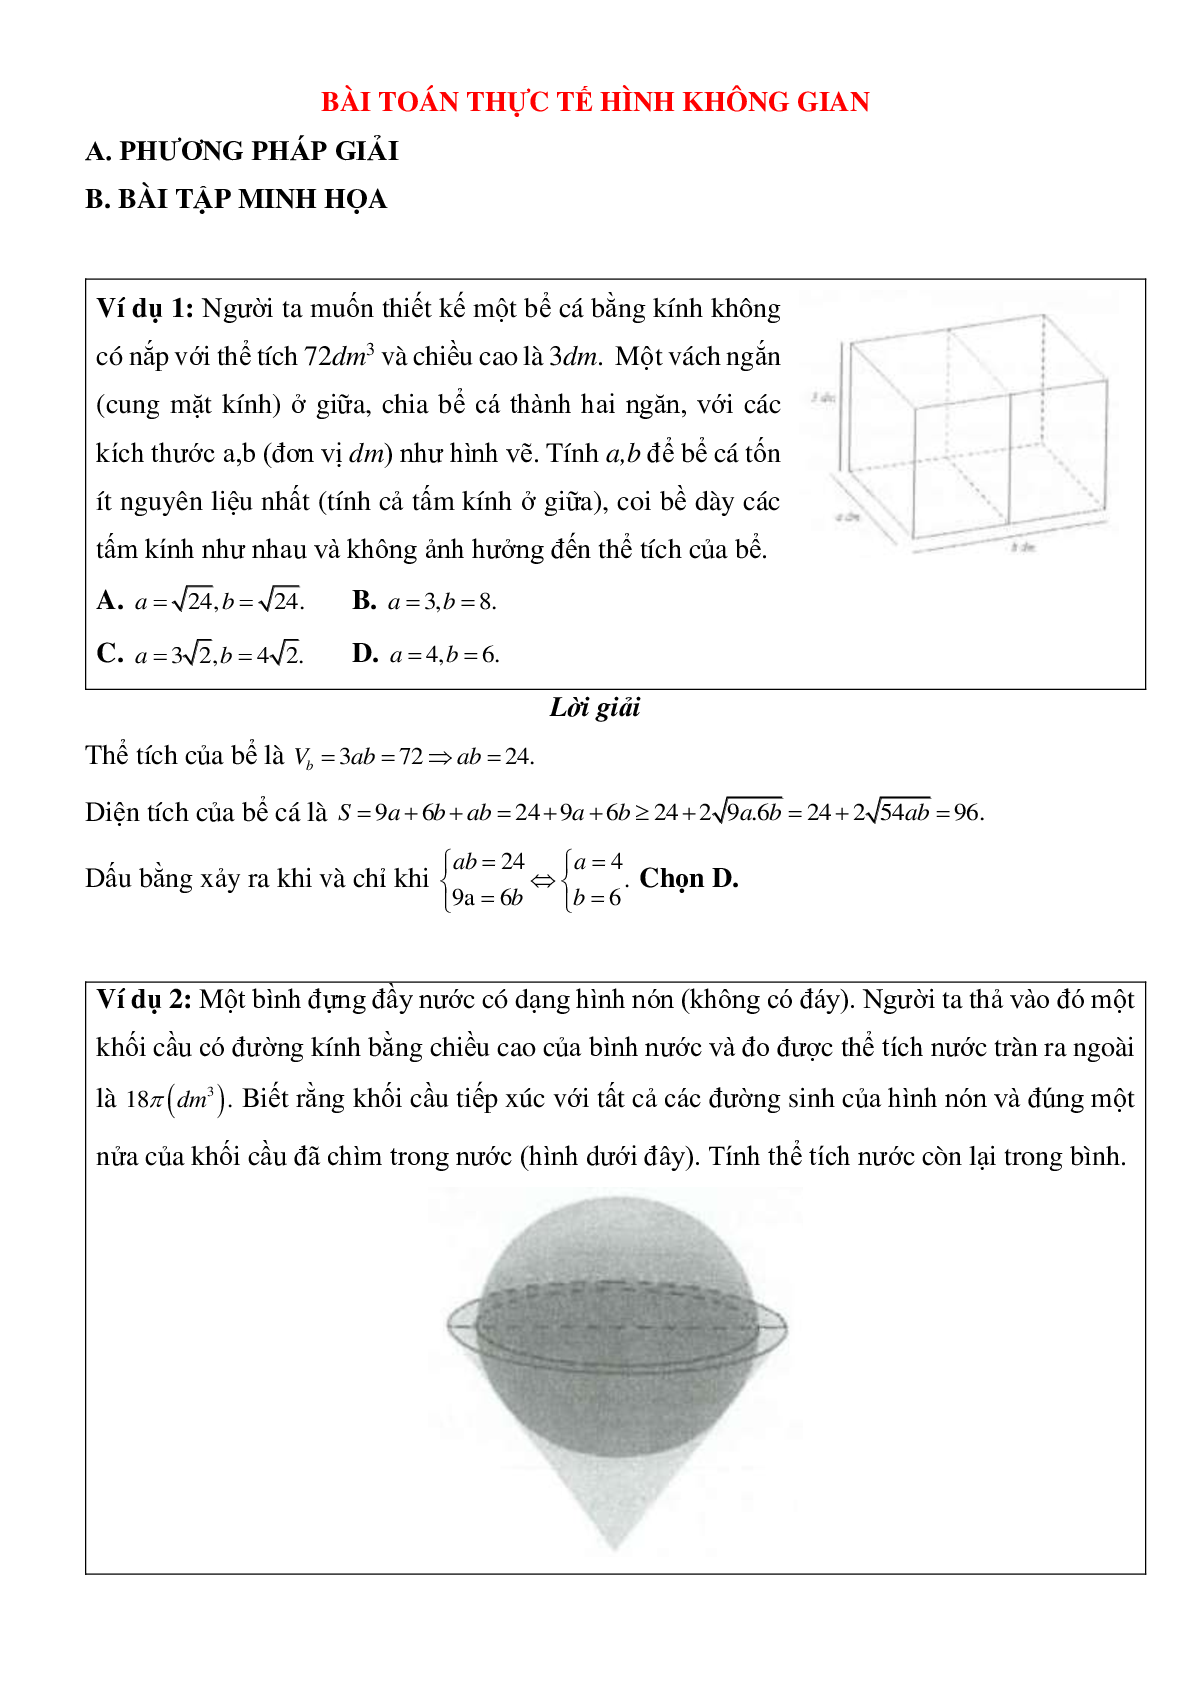 Bài toán thực tế hình không gian có đáp án (trang 1)